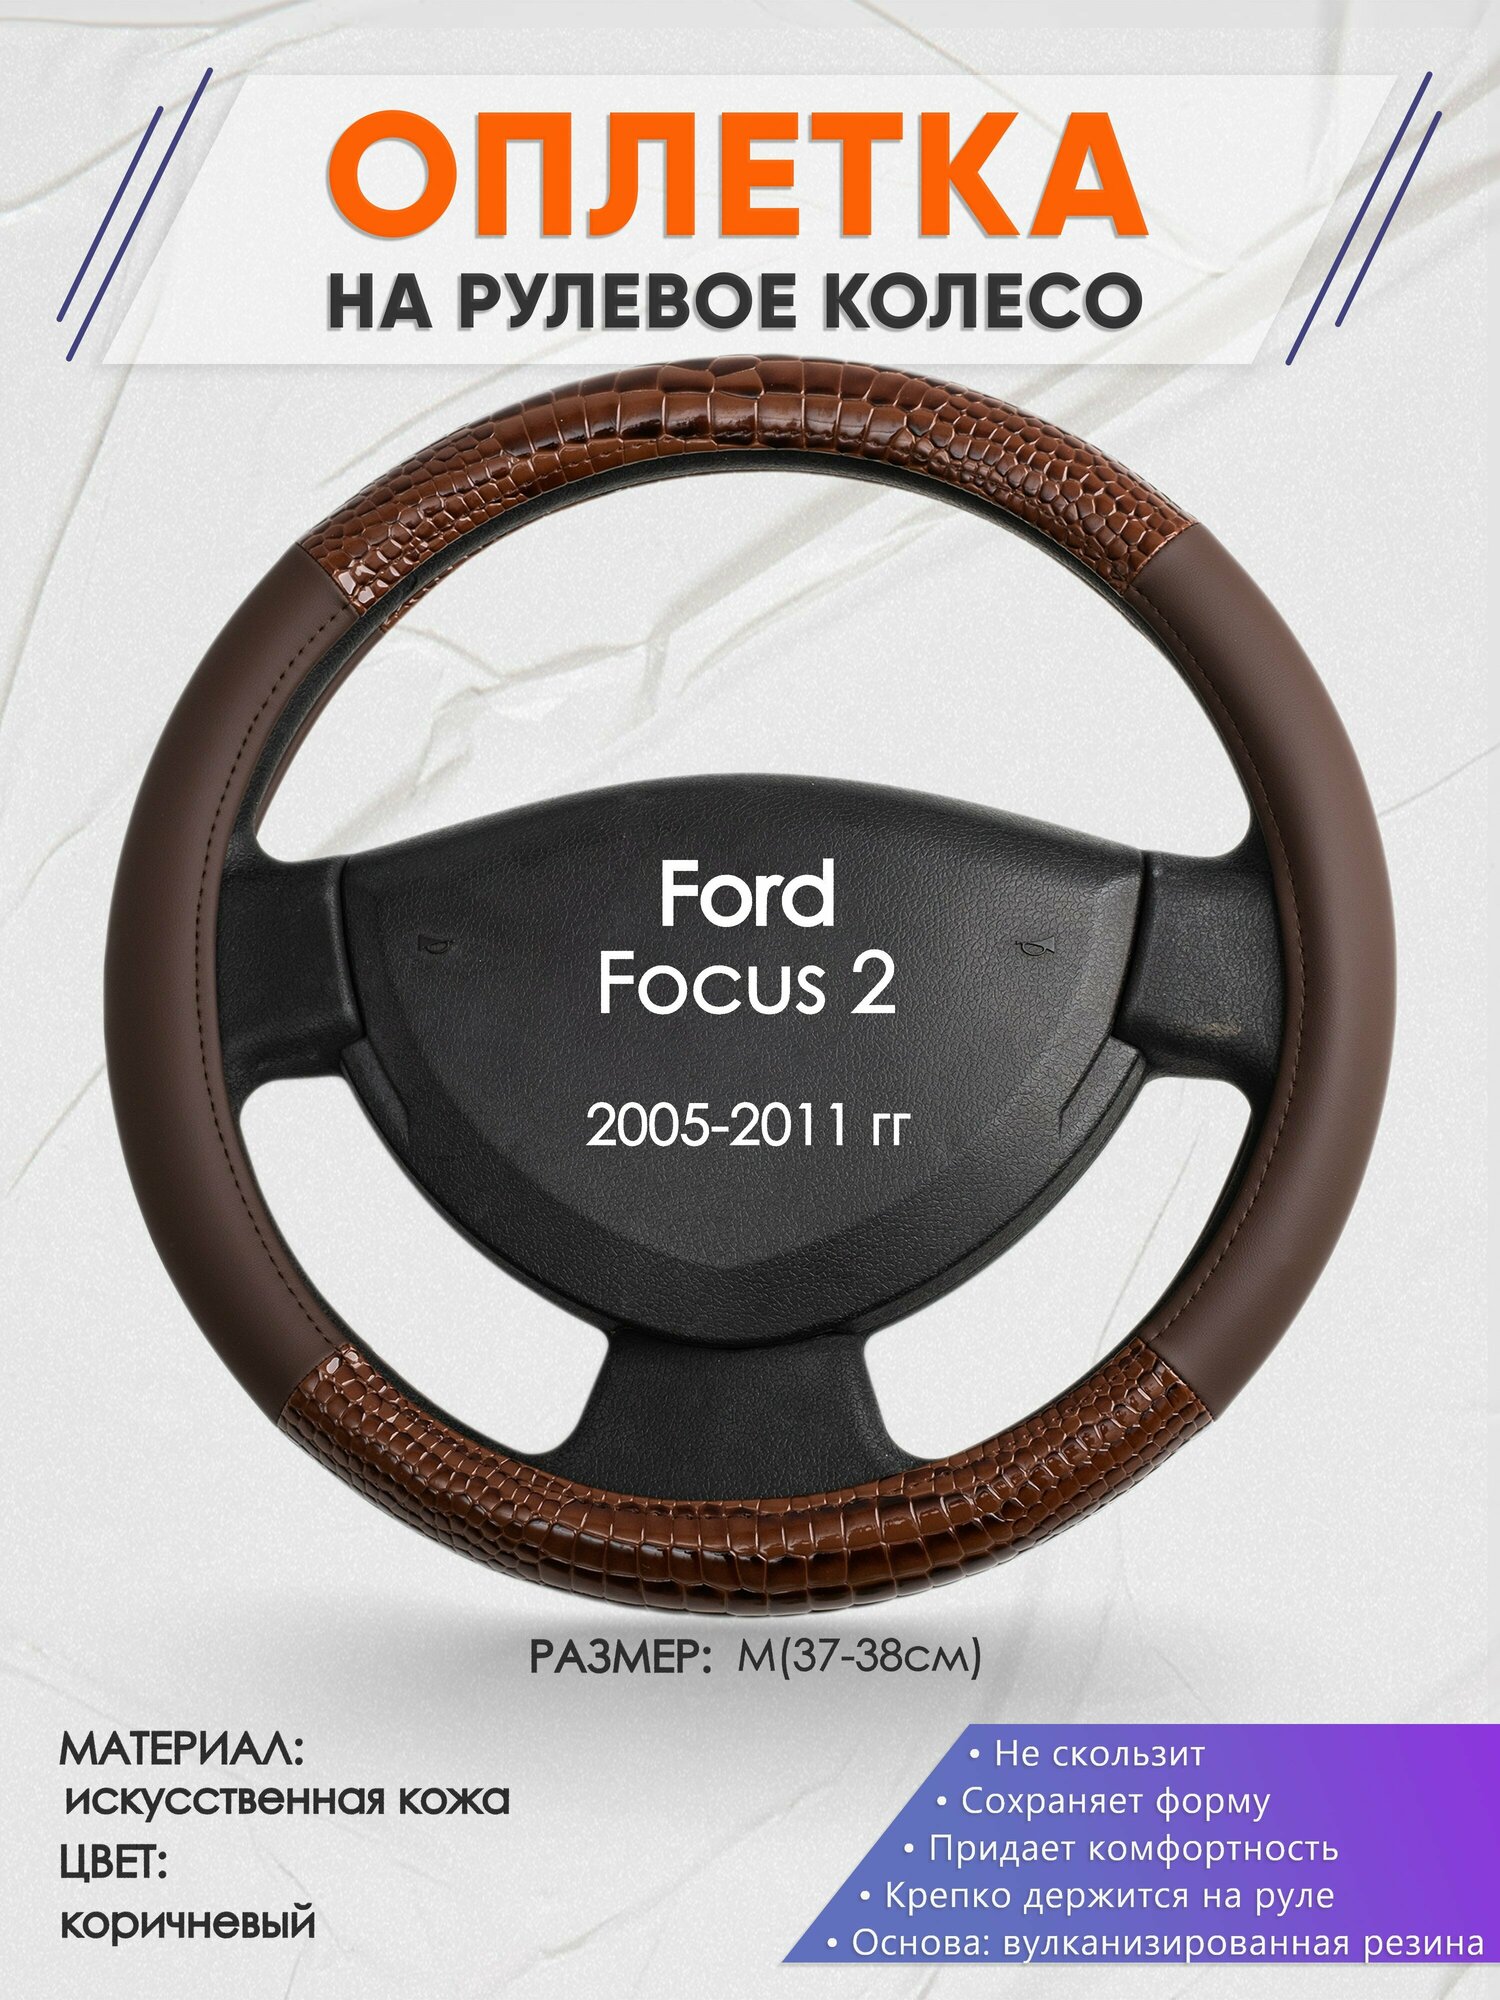 Оплетка на руль для Ford Focus 2(Форд Фокус 2) 2005-2011, M(37-38см), Искусственная кожа 85